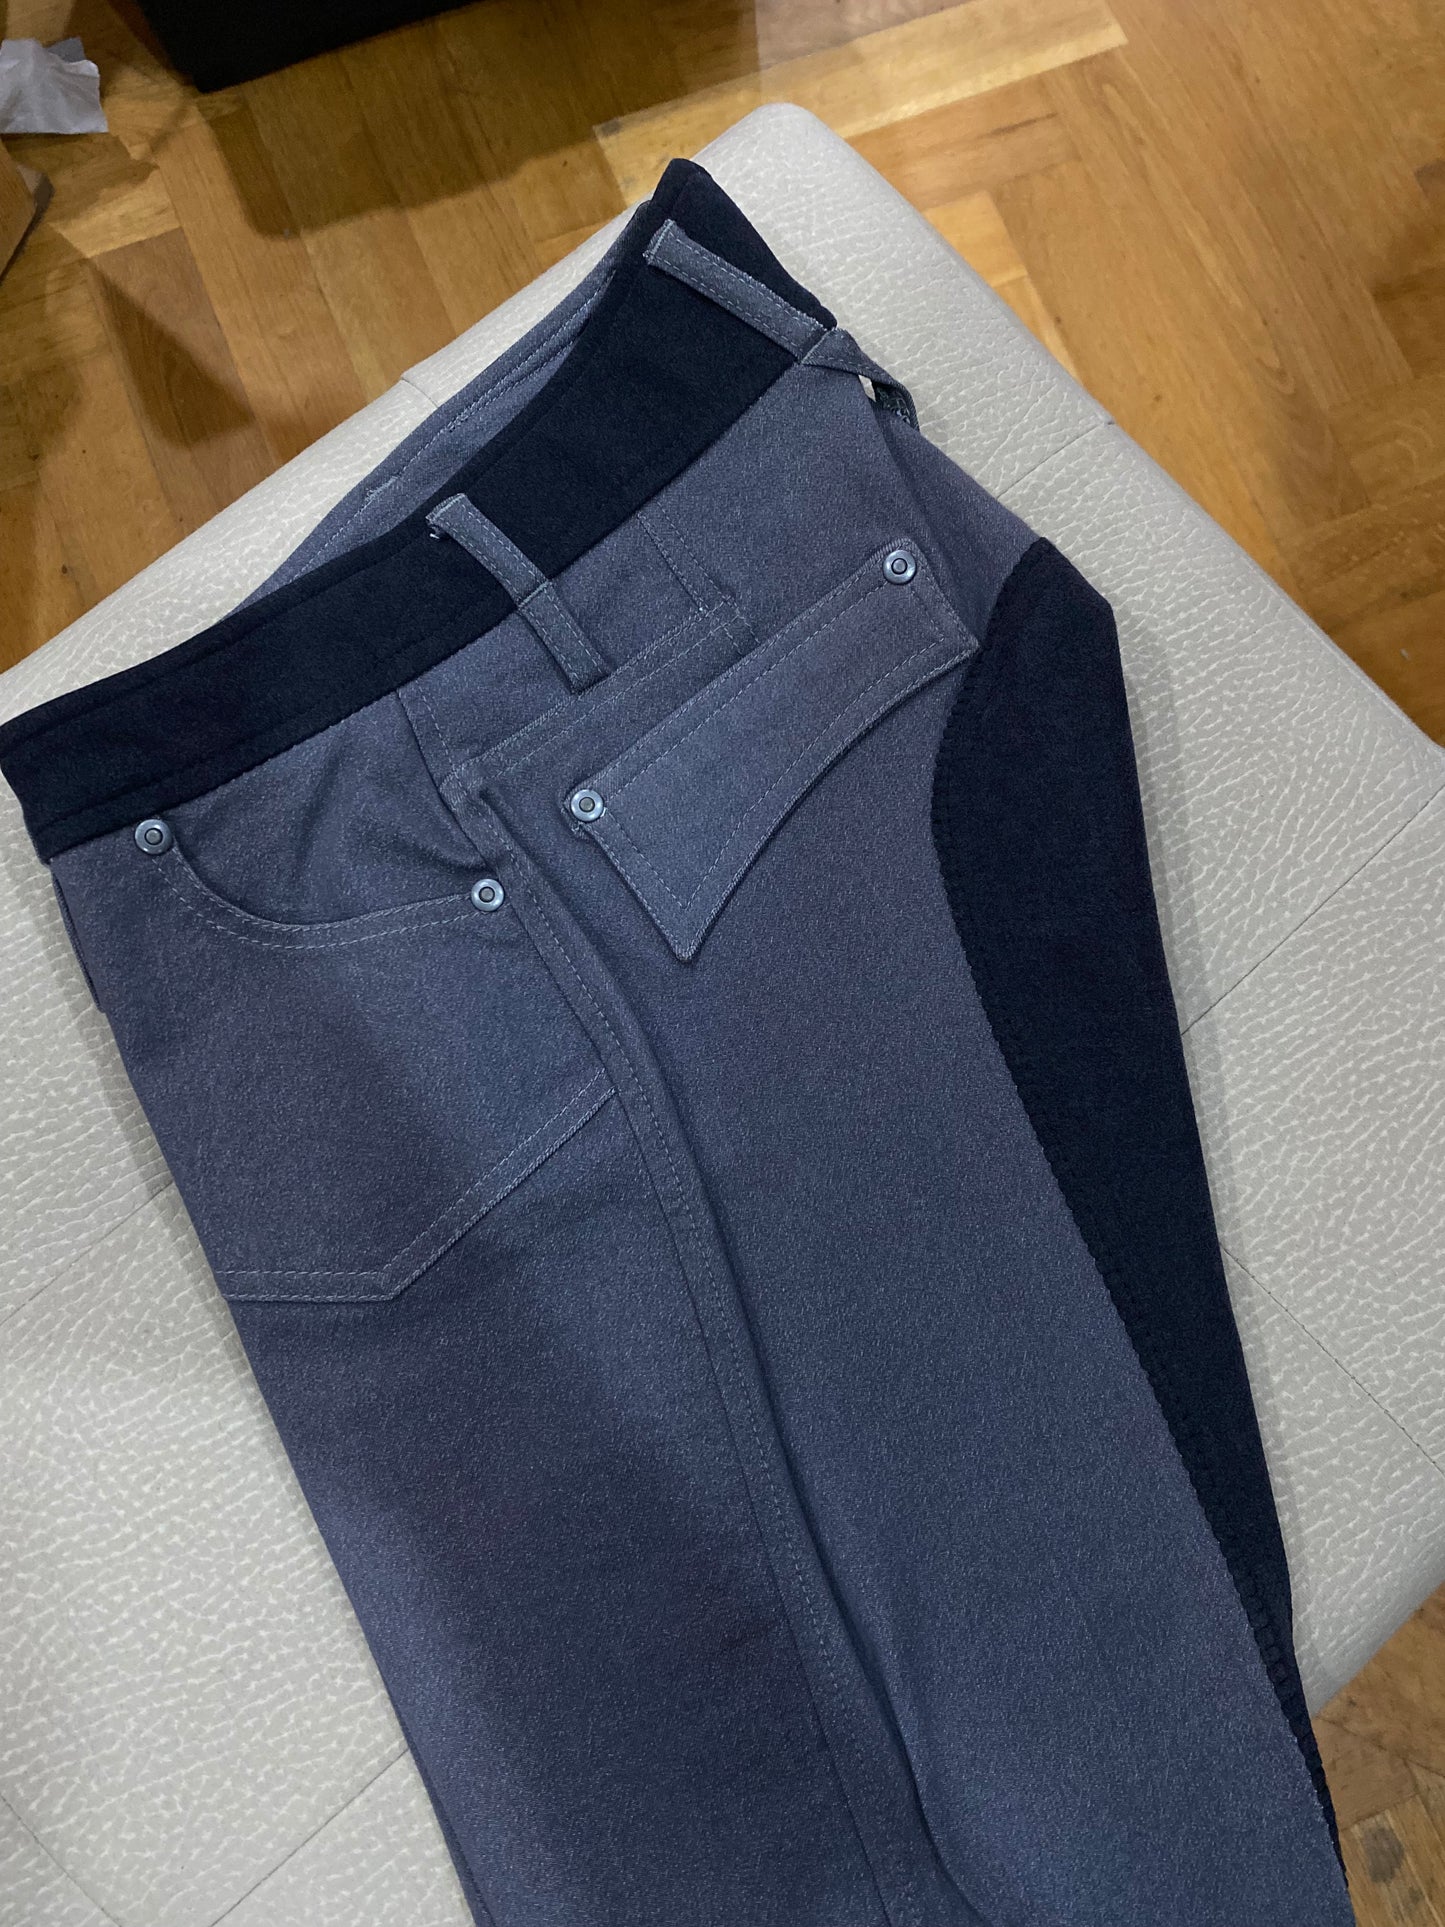 Pantalone grigio | El gaucho sport